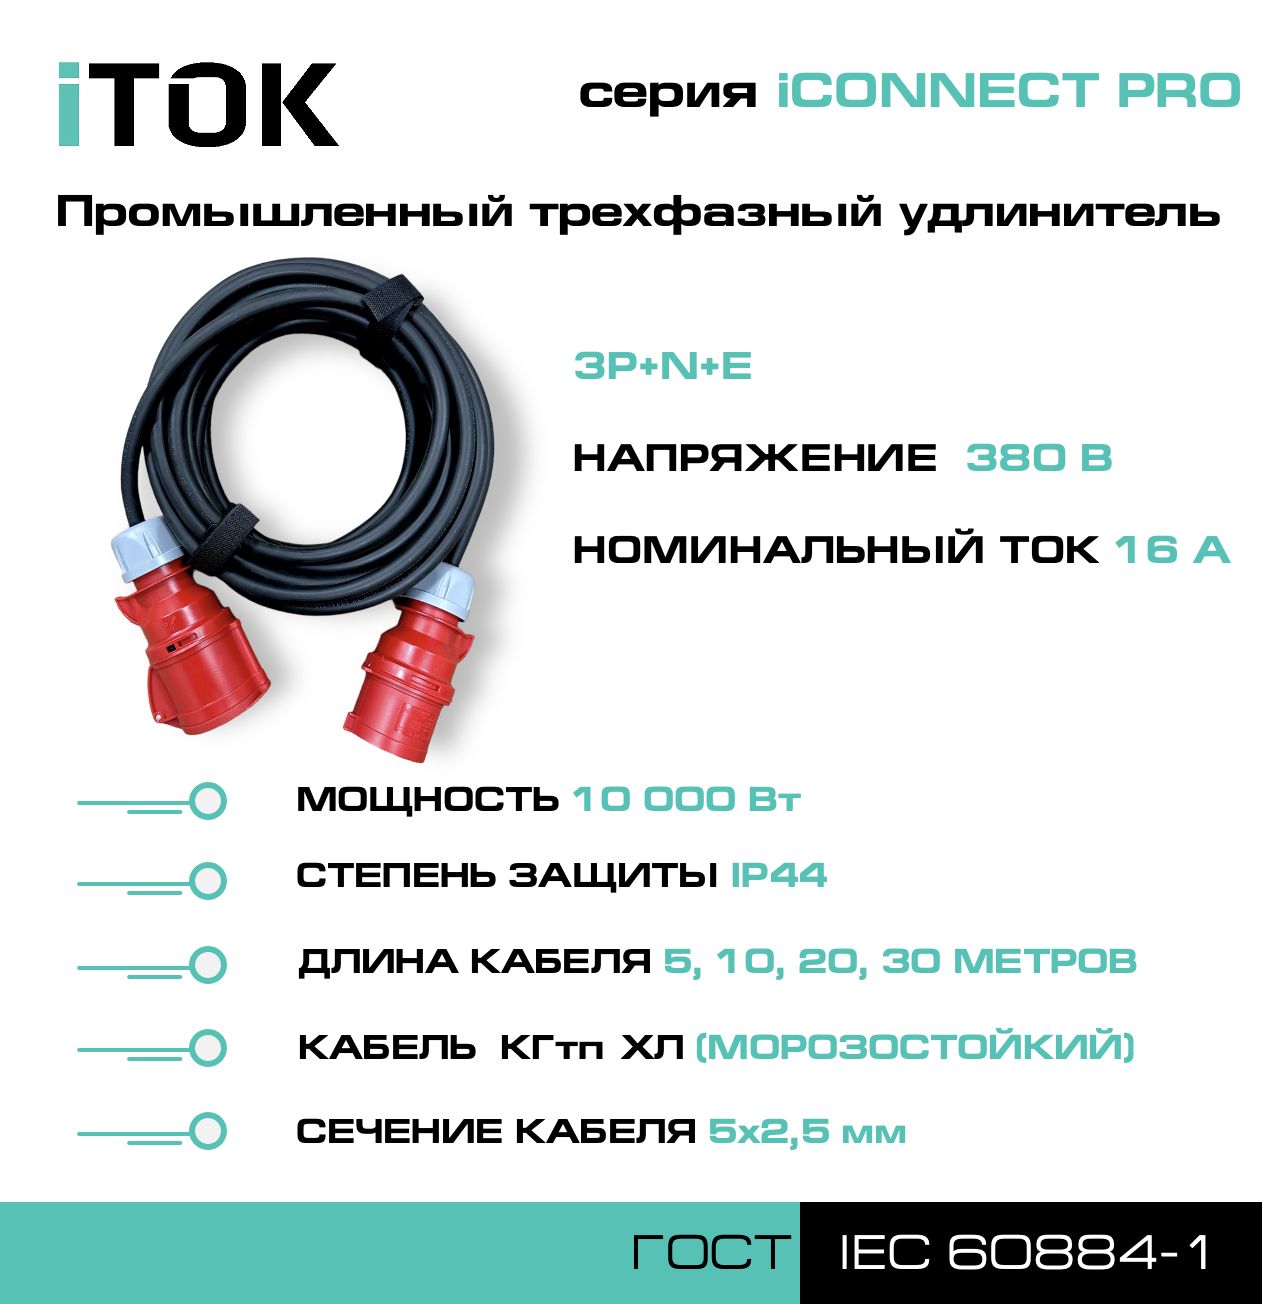 Удлинитель силовой iTOK iCONNECT PRO 380В 16А 30м КГтп-ХЛ 5х2,5 мм 3P+N+E, IP44